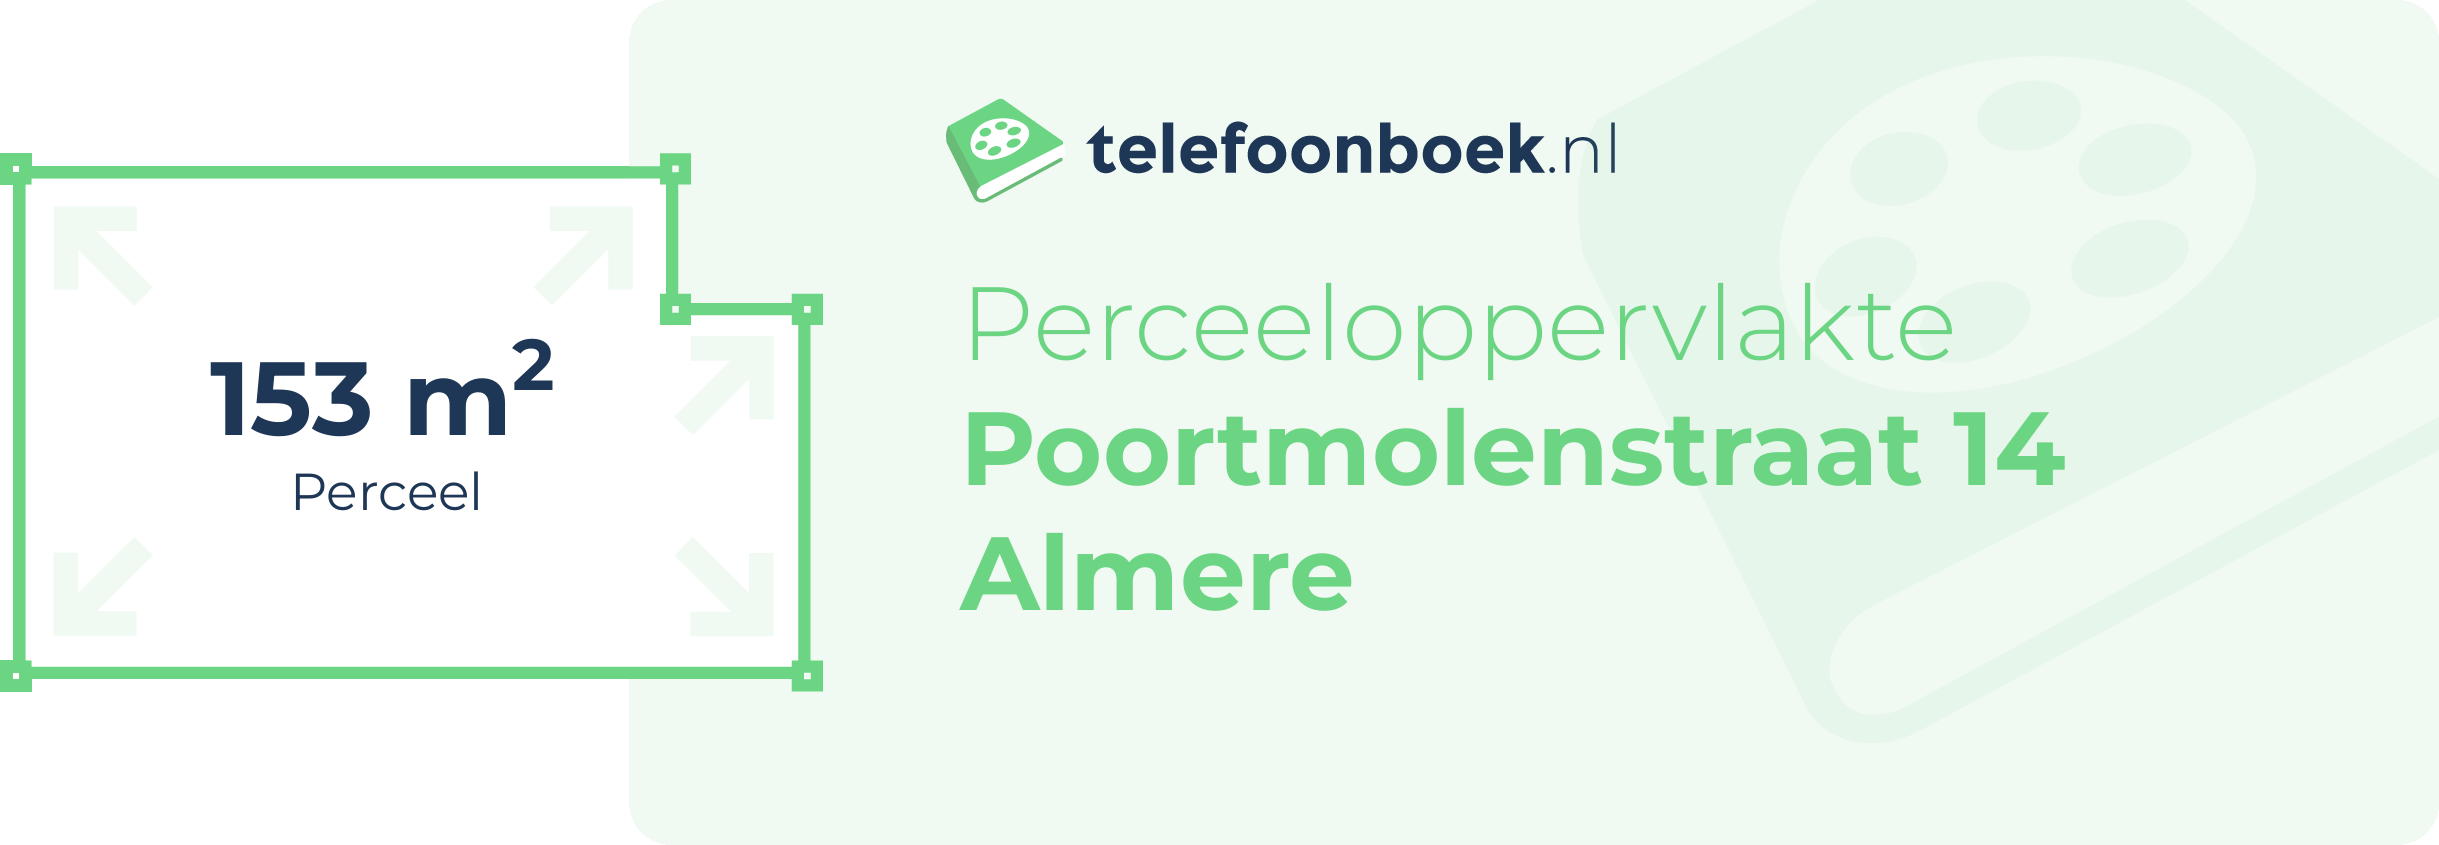 Perceeloppervlakte Poortmolenstraat 14 Almere